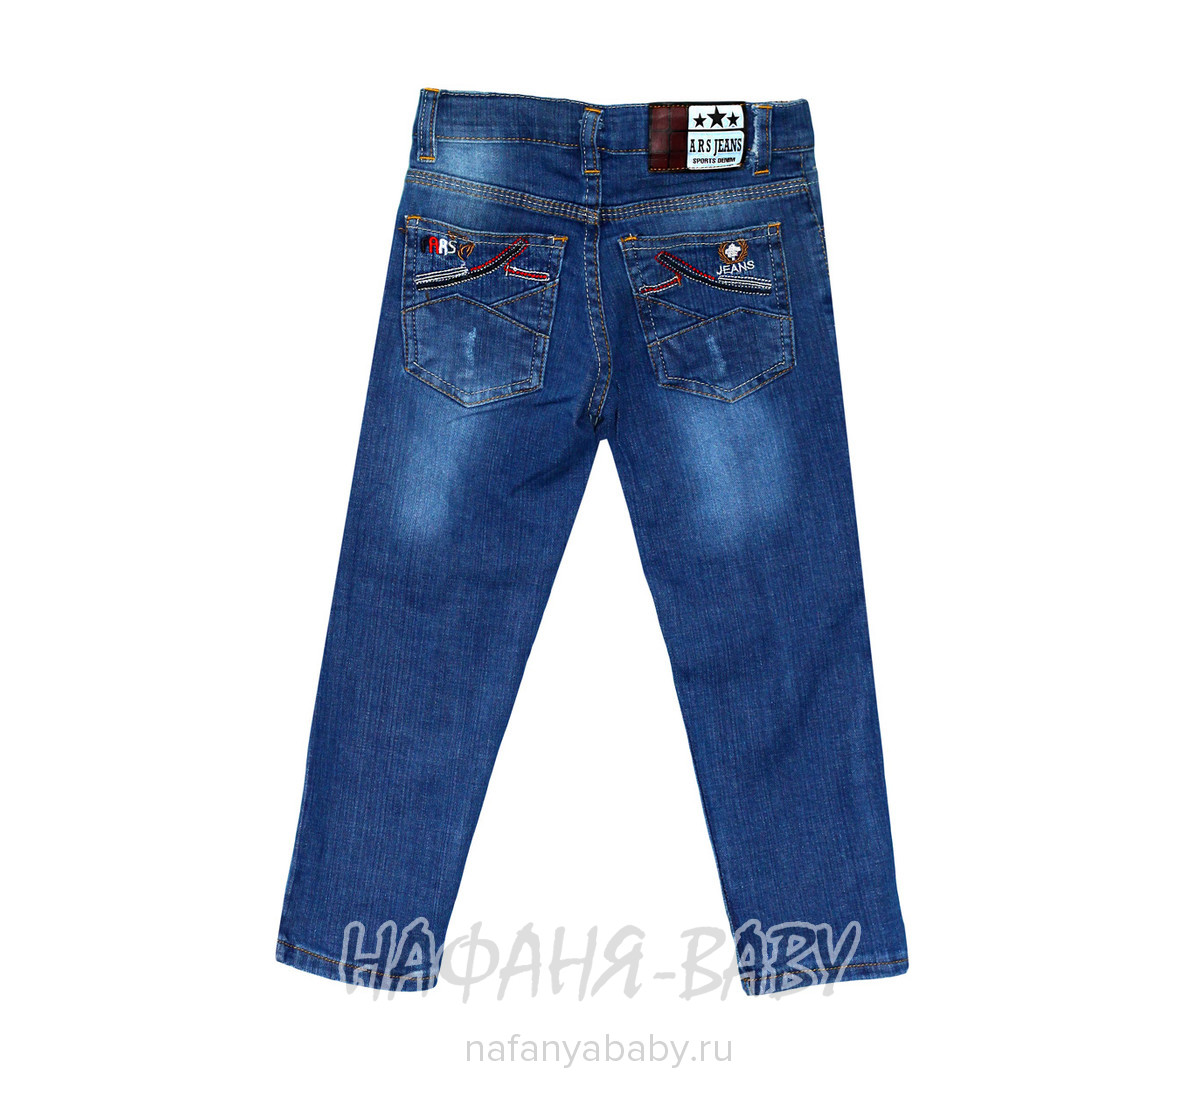 Детские джинсы ARS JEANS арт: 4851 3-7, 1-4 года, 5-9 лет, цвет синий, оптом Турция